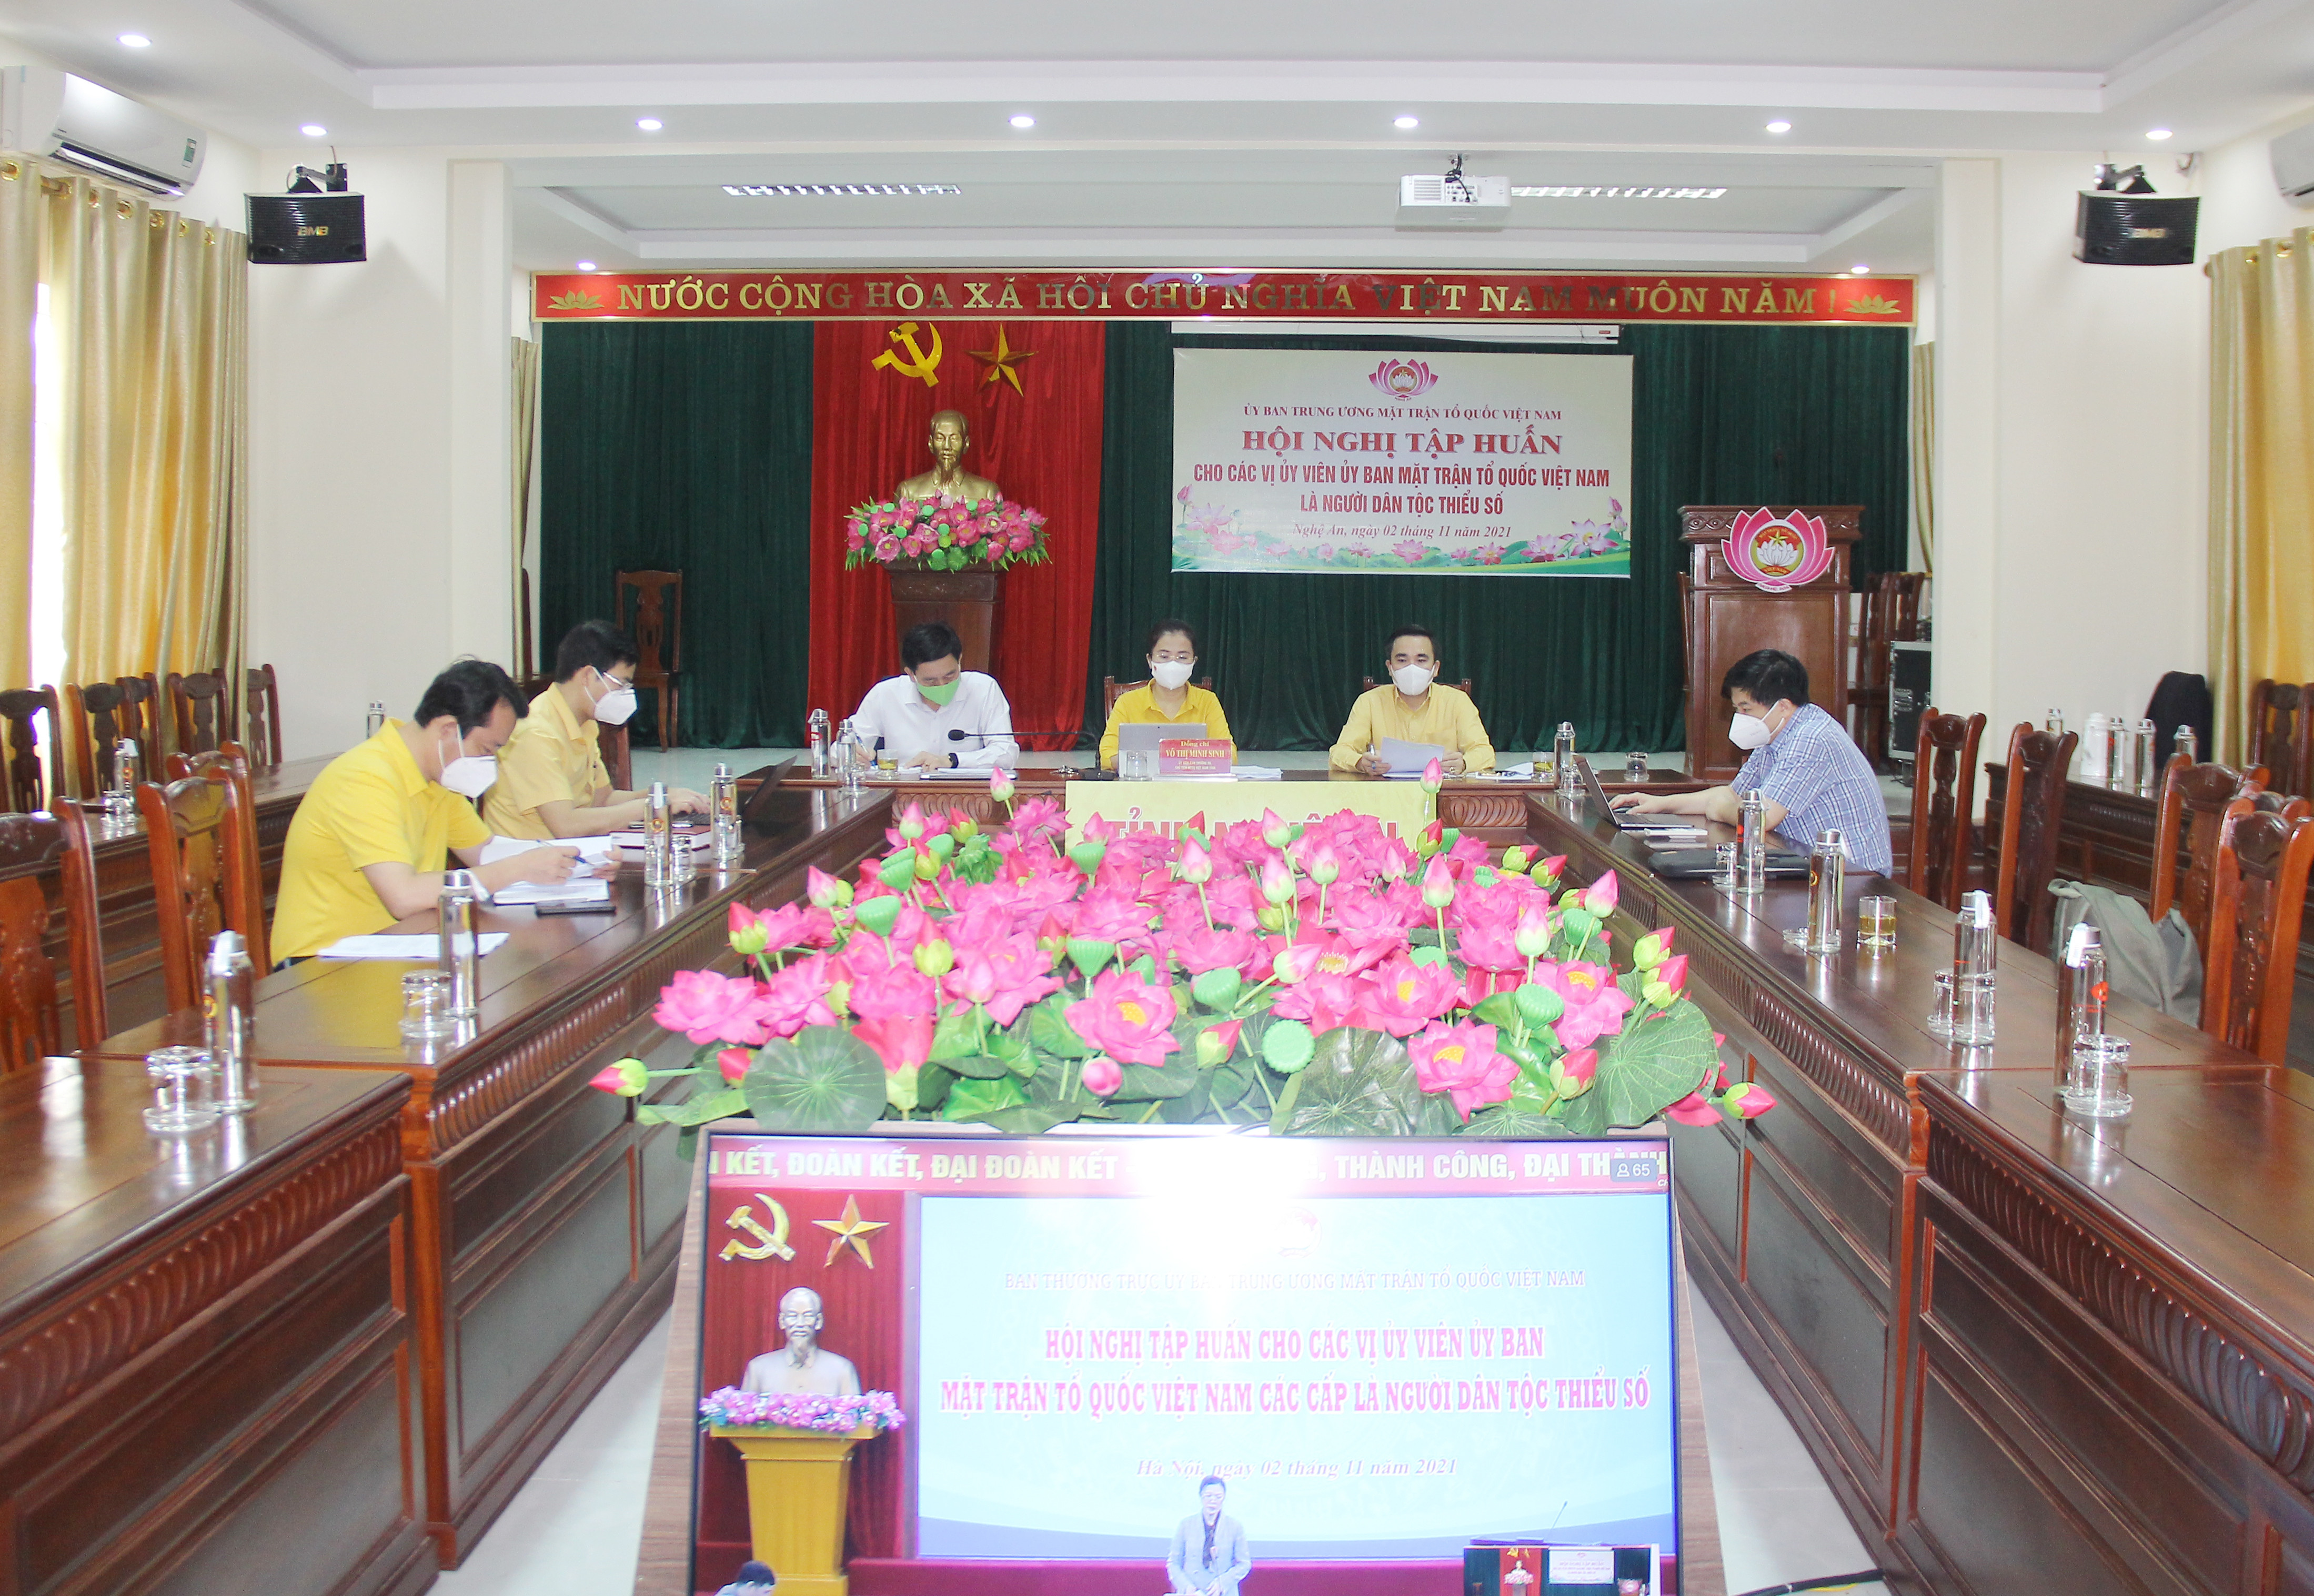 Sáng 2/11, Ủy ban Trung ương MTTQ Việt Nam tổ chức hội nghị tập huấn cho các vị Ủy viên UBMTTQ Việt Nam các cấp là người dân tộc thiểu số theo hình thức trực tuyến đến 47 điểm cầu địa phương.